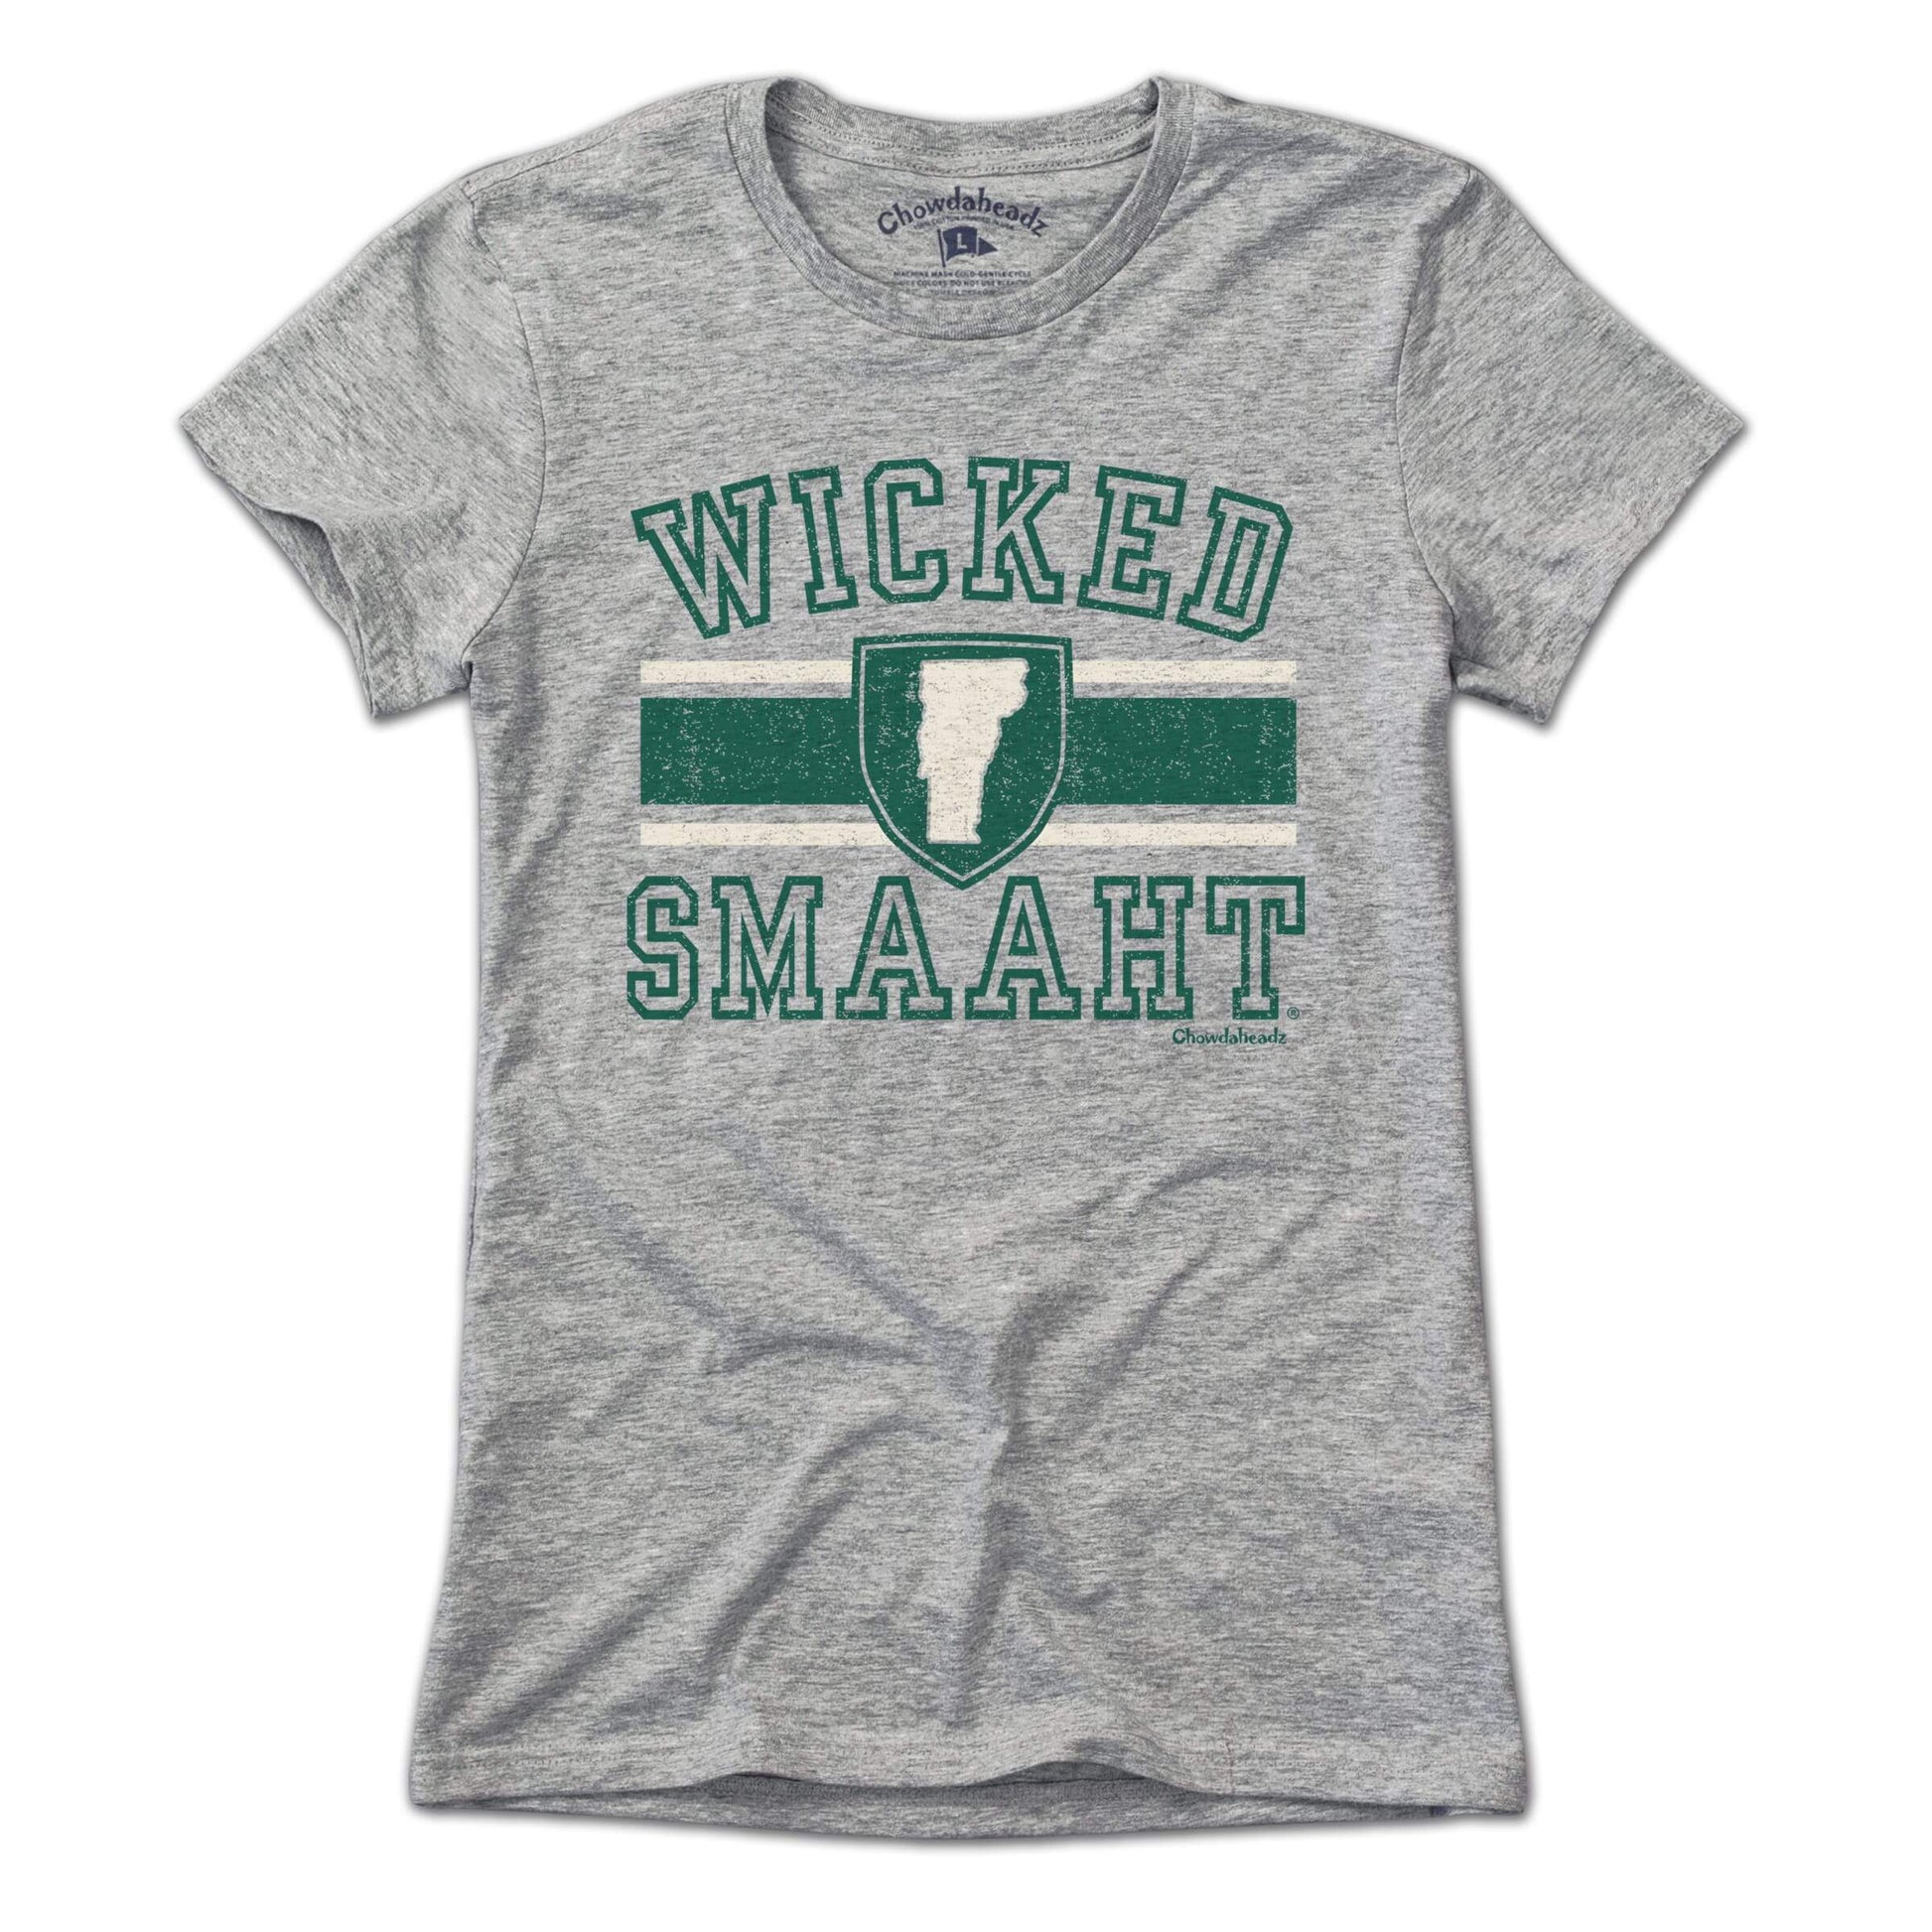 Wicked Smaaht University Vermont T-Shirt - Chowdaheadz